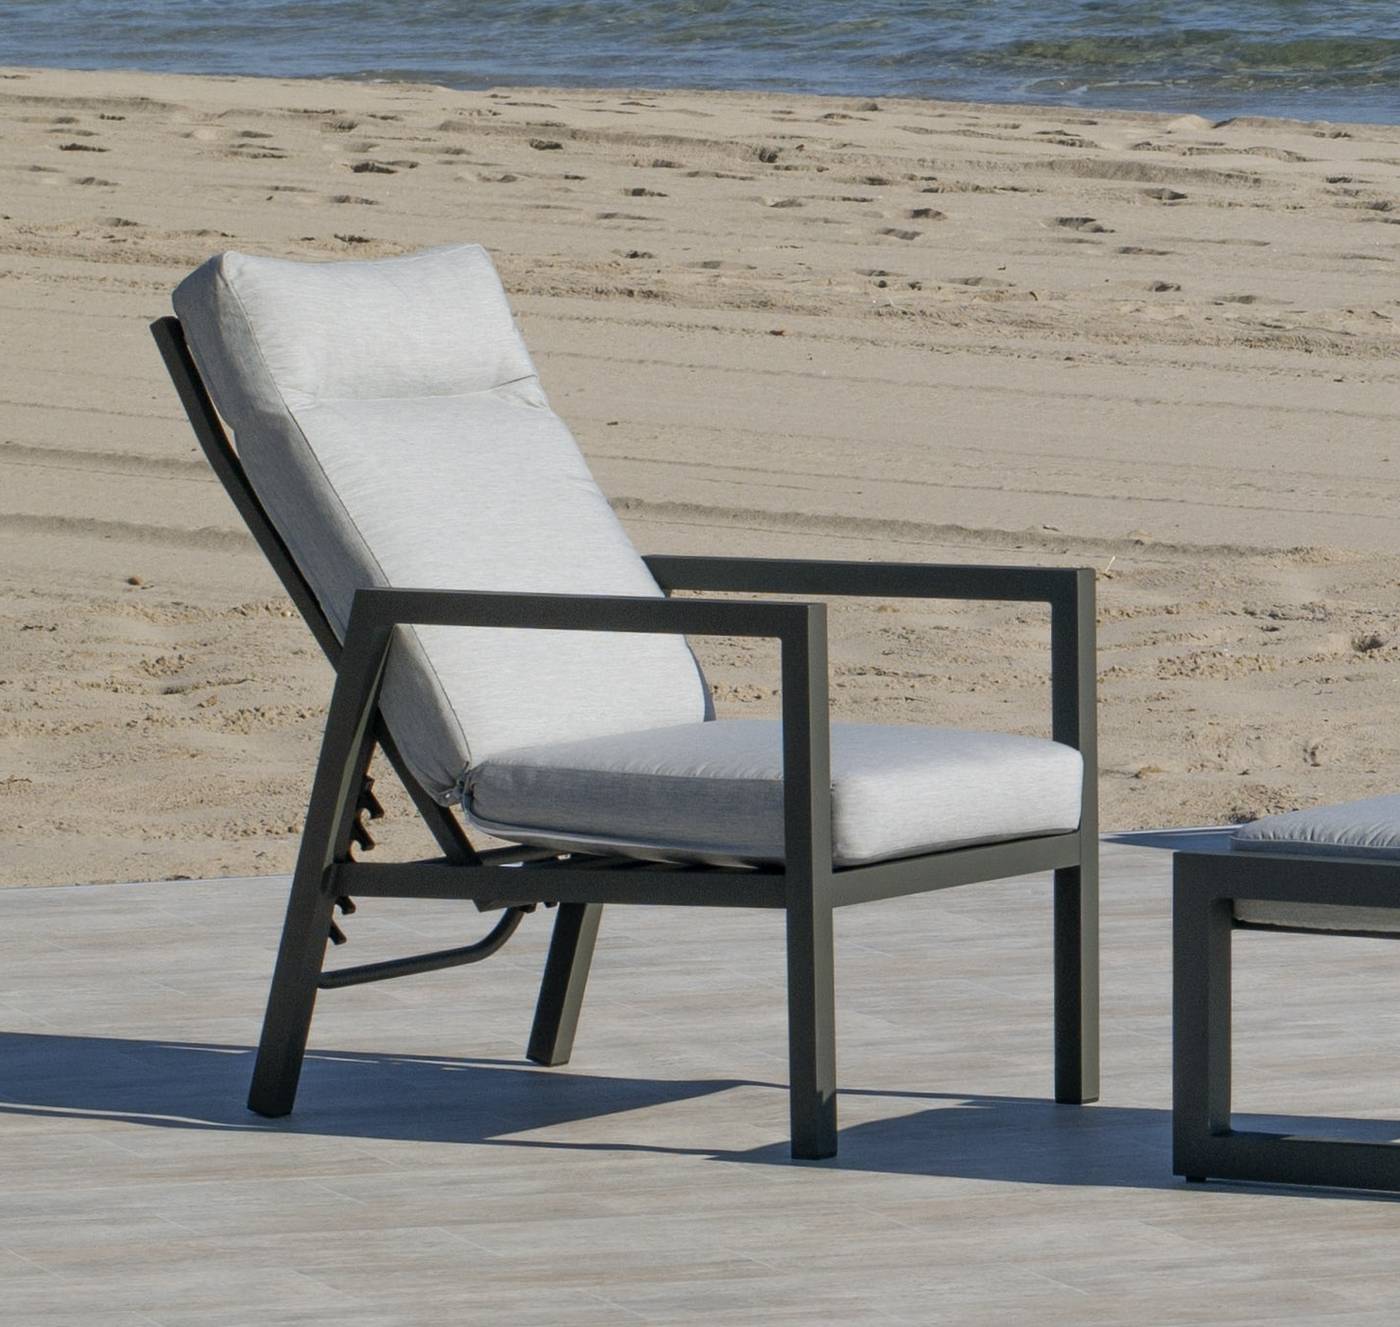 Sillón Aluminio Voriam-1 - Sillón relax lujo, con respaldo reclinable. Fabricado de aluminio en color blanco, antracita, champagne, plata o marrón.